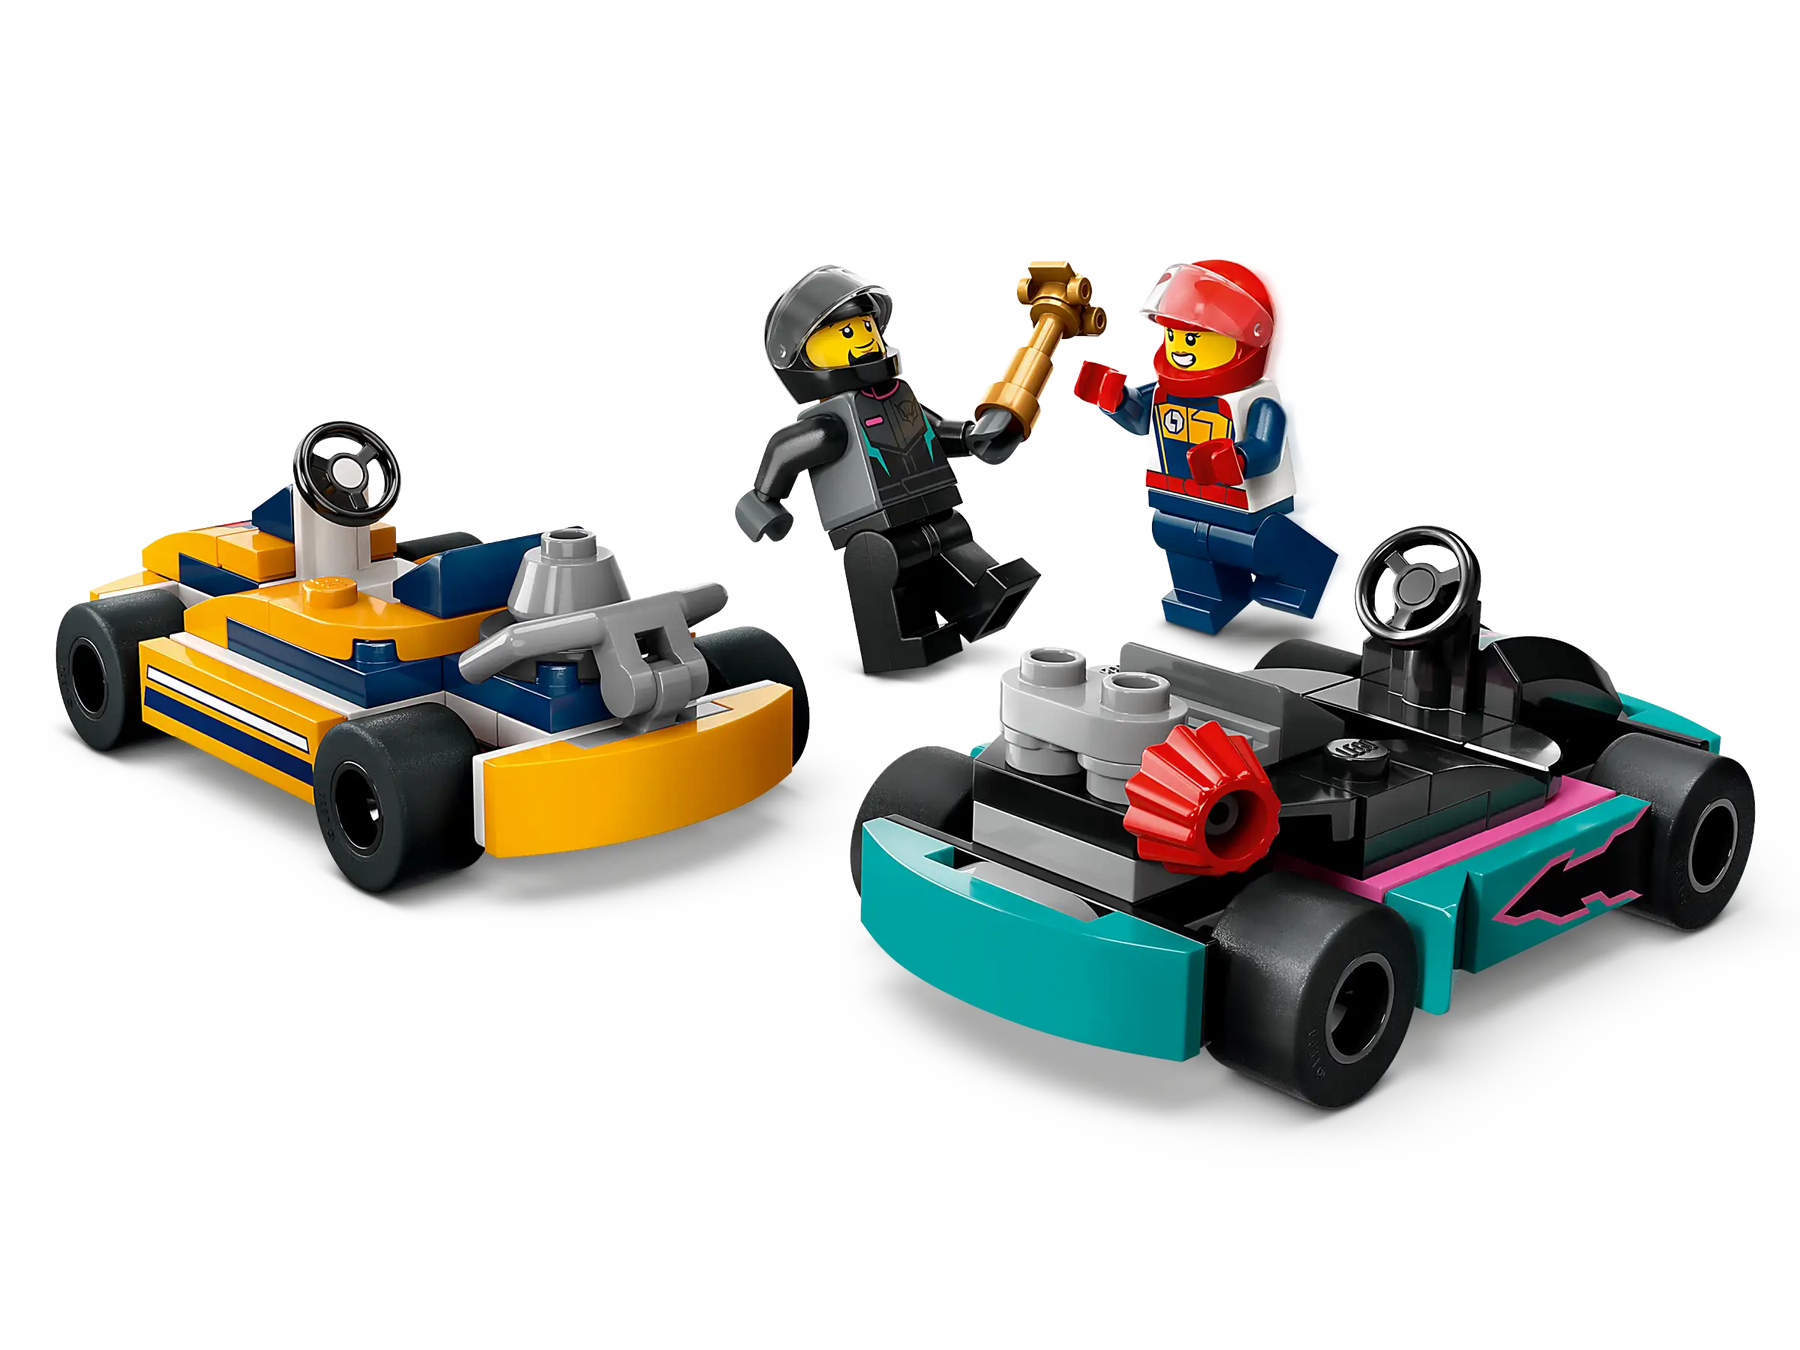 LEGO City 60400 Go-Kart-autot ja Kilpakuljettajat